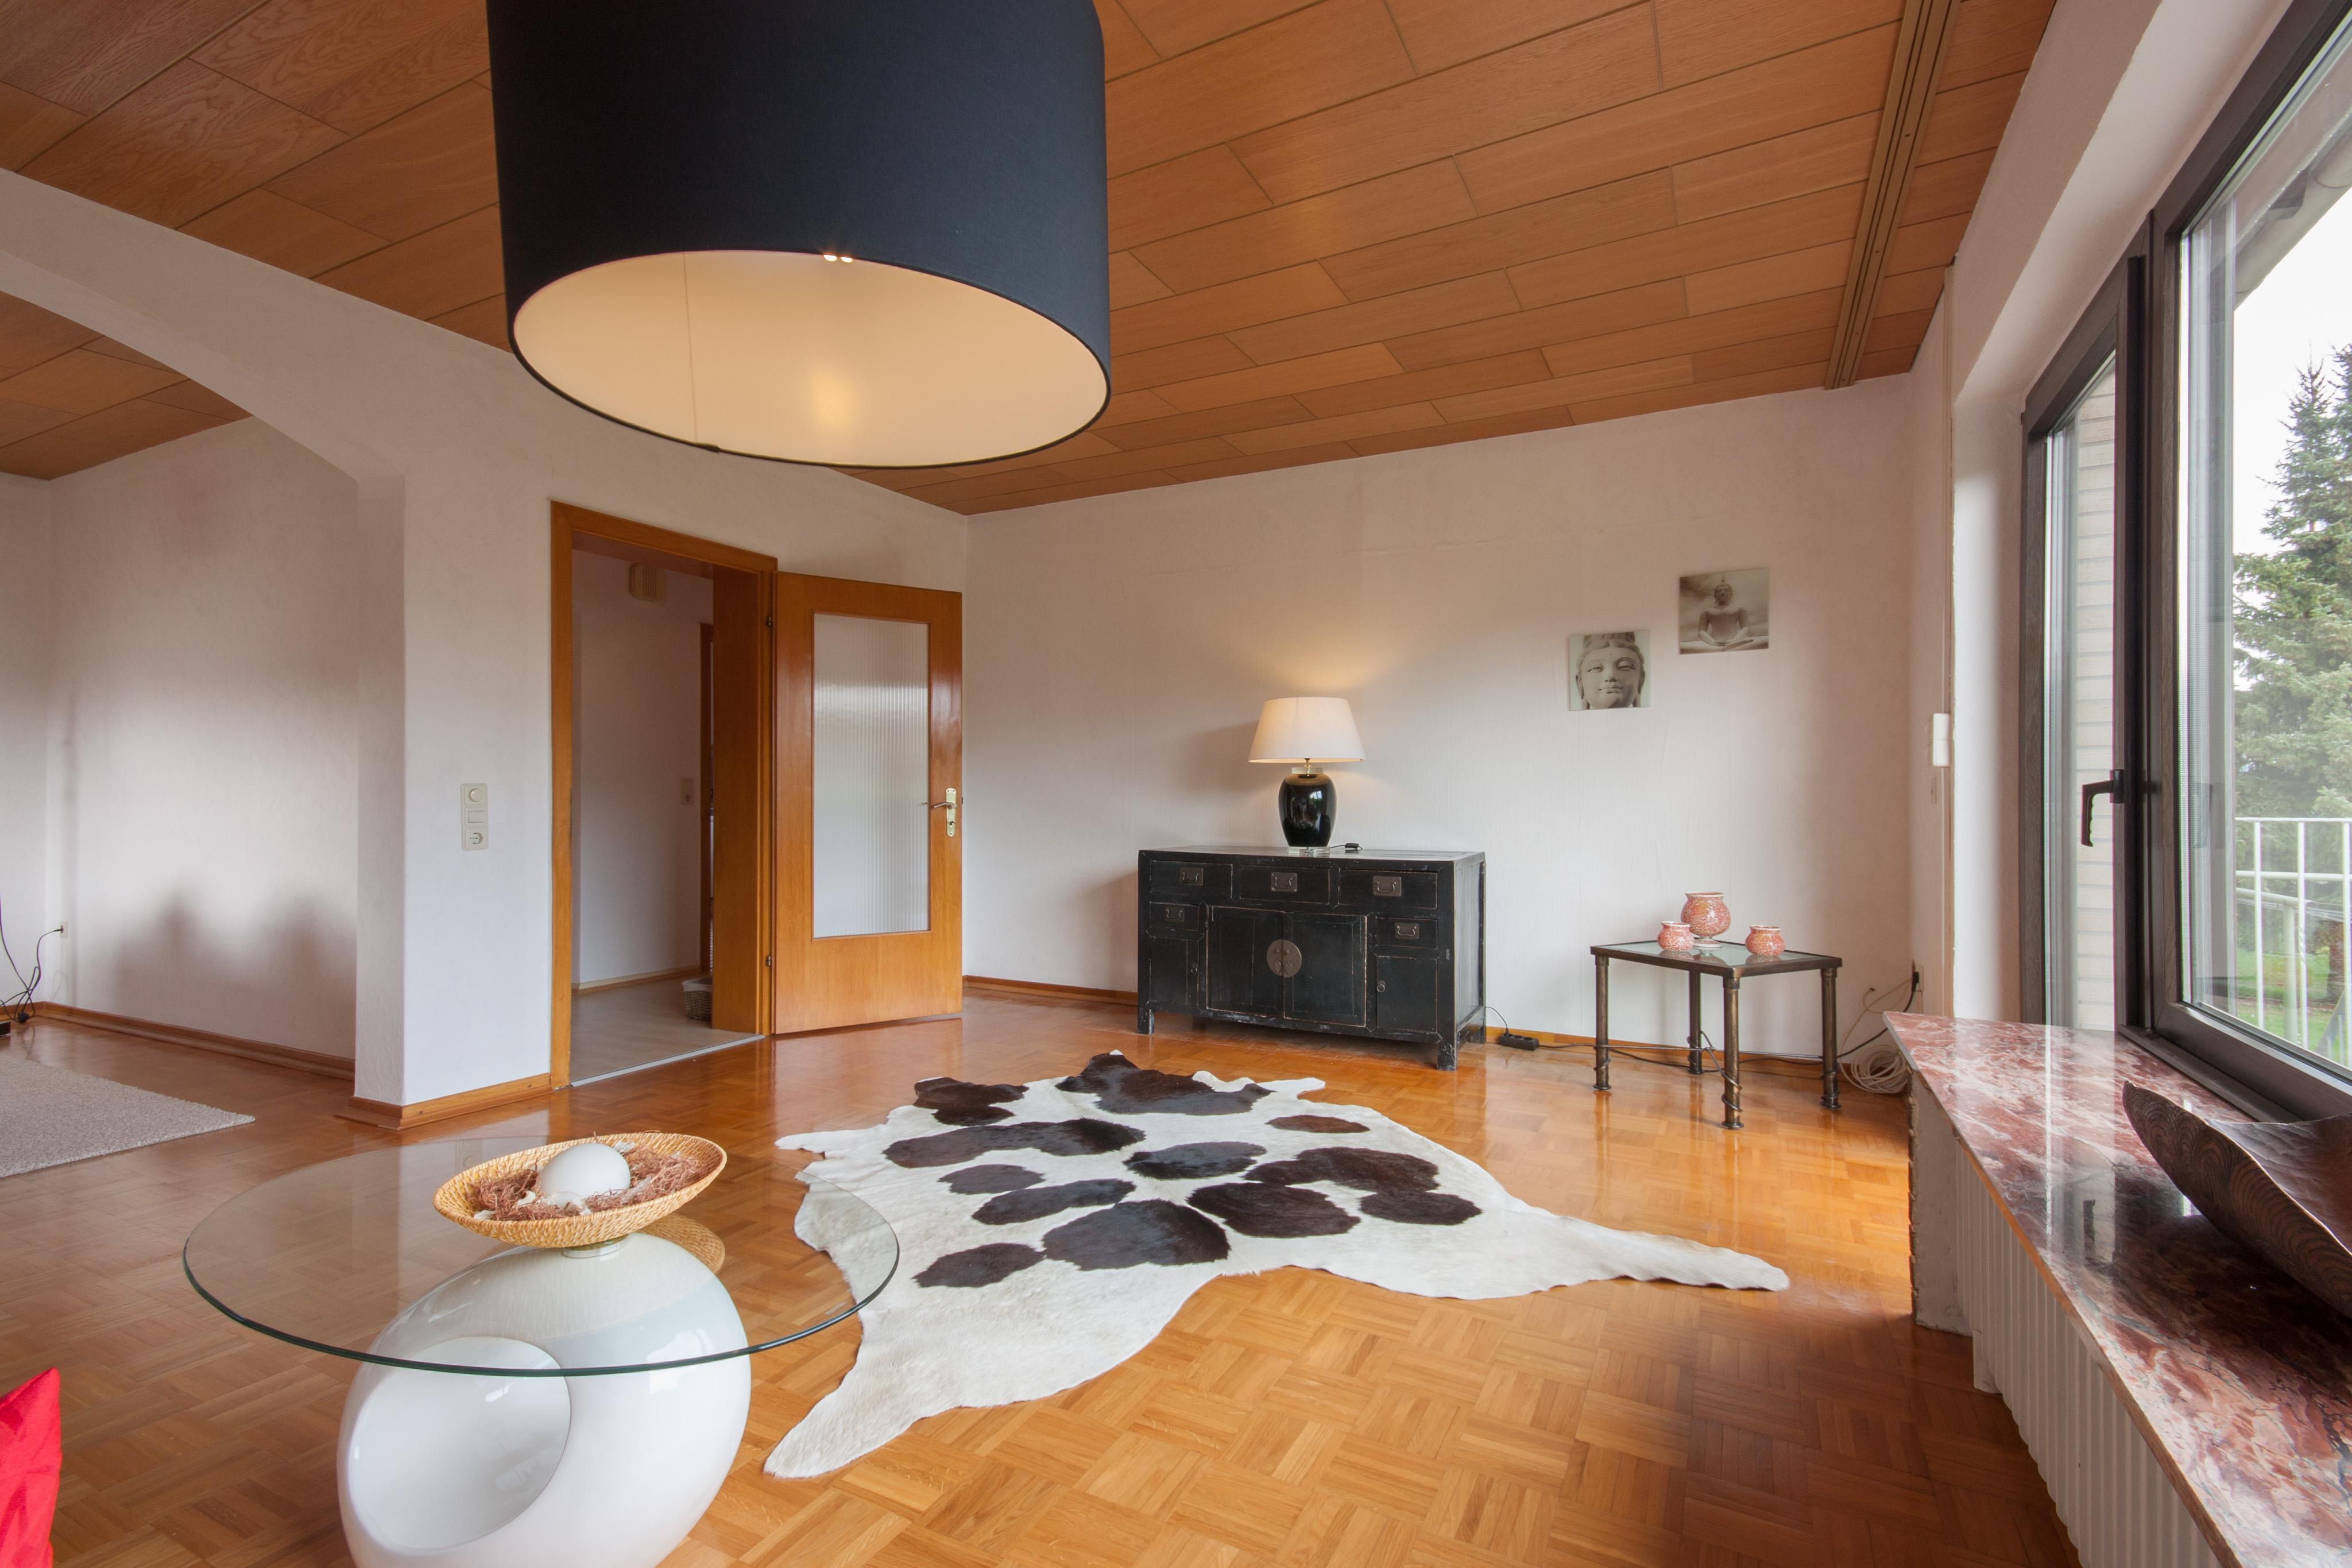 Wohnzimmer - nachher #couchtisch #beistelltisch #wohnzimmer #holzdecke #kommode #kuhfell ©IMMOTION Home Staging / Florian Gürbig